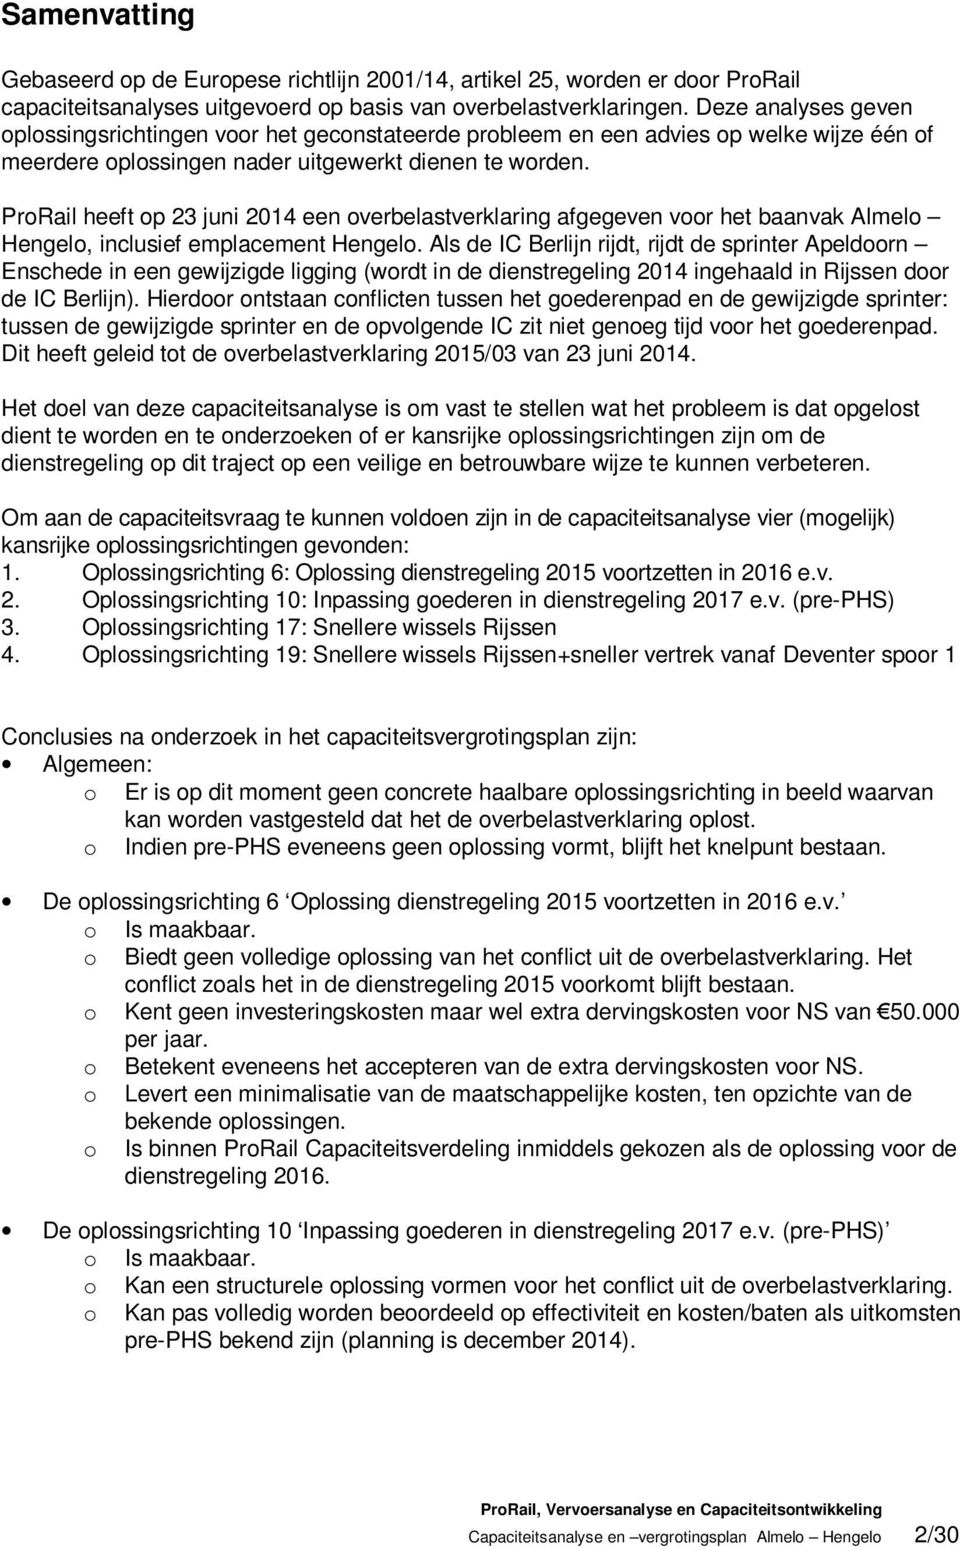 ProRail heeft op 23 juni 2014 een overbelastverklaring afgegeven voor het baanvak Almelo Hengelo, inclusief emplacement Hengelo.